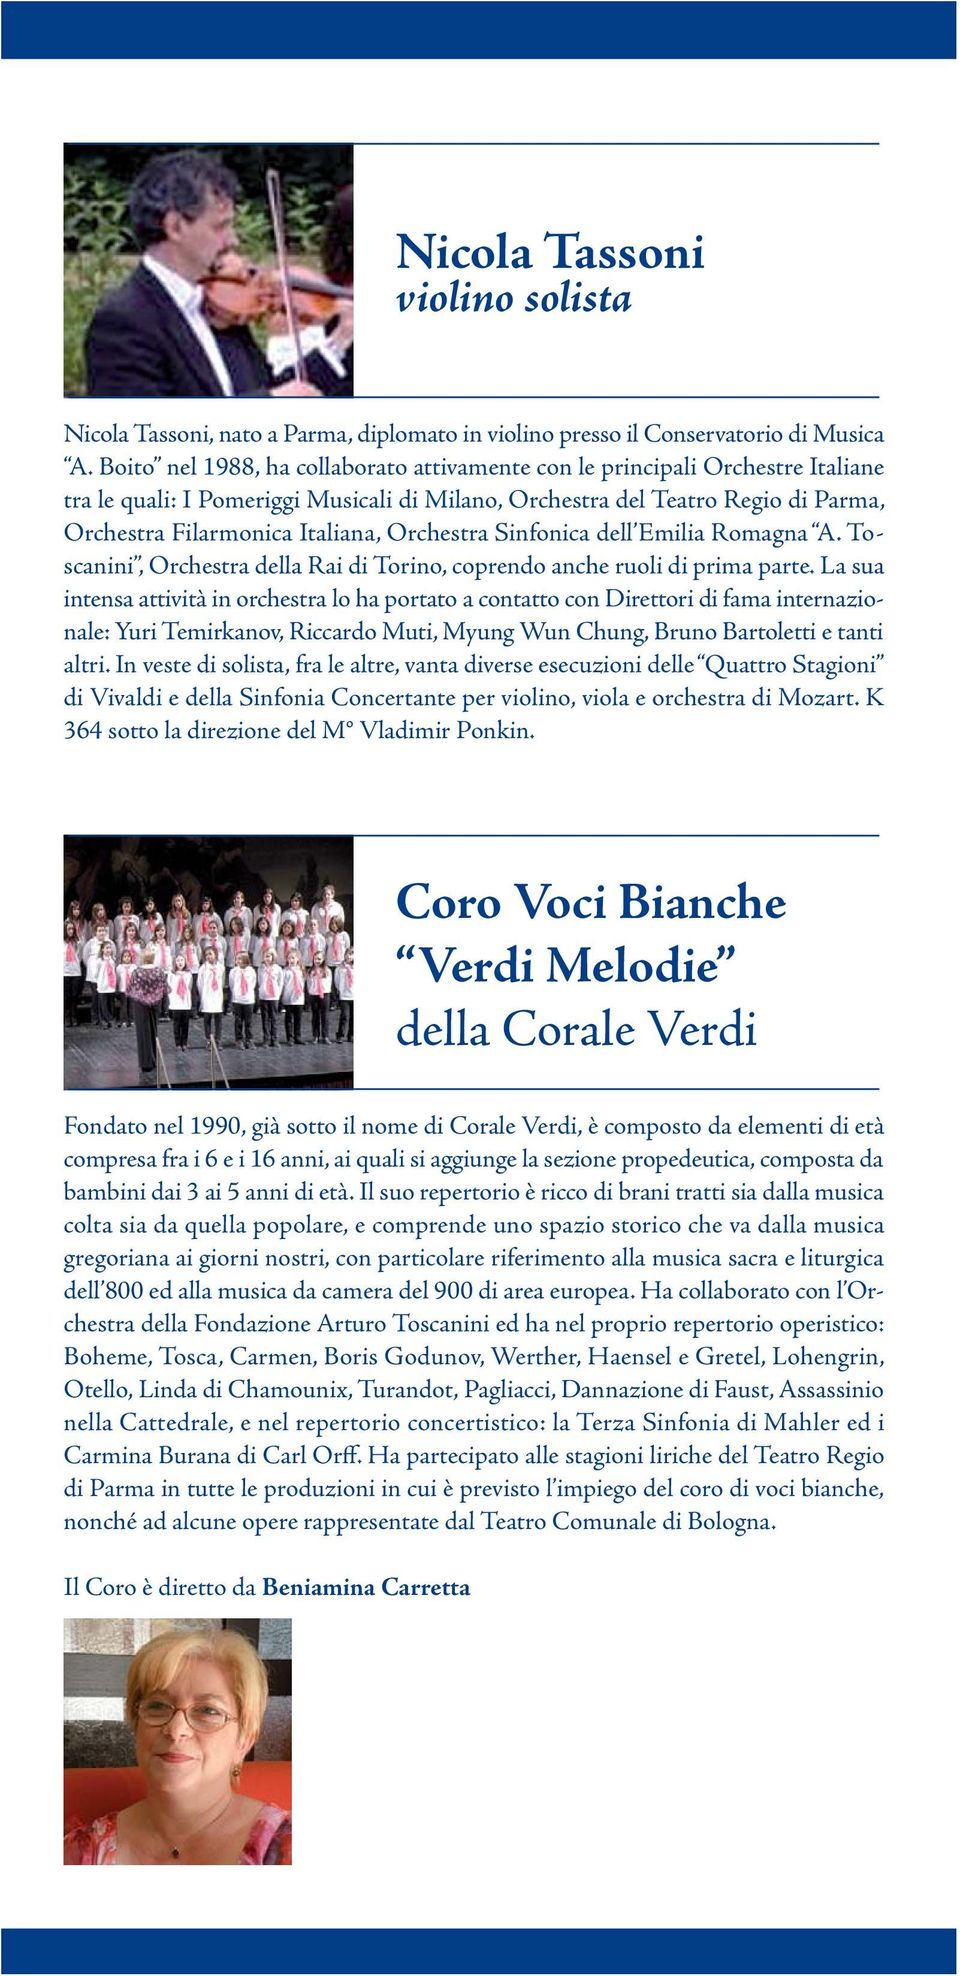 Orchestra Sinfonica dell Emilia Romagna A. Toscanini, Orchestra della Rai di Torino, coprendo anche ruoli di prima parte.